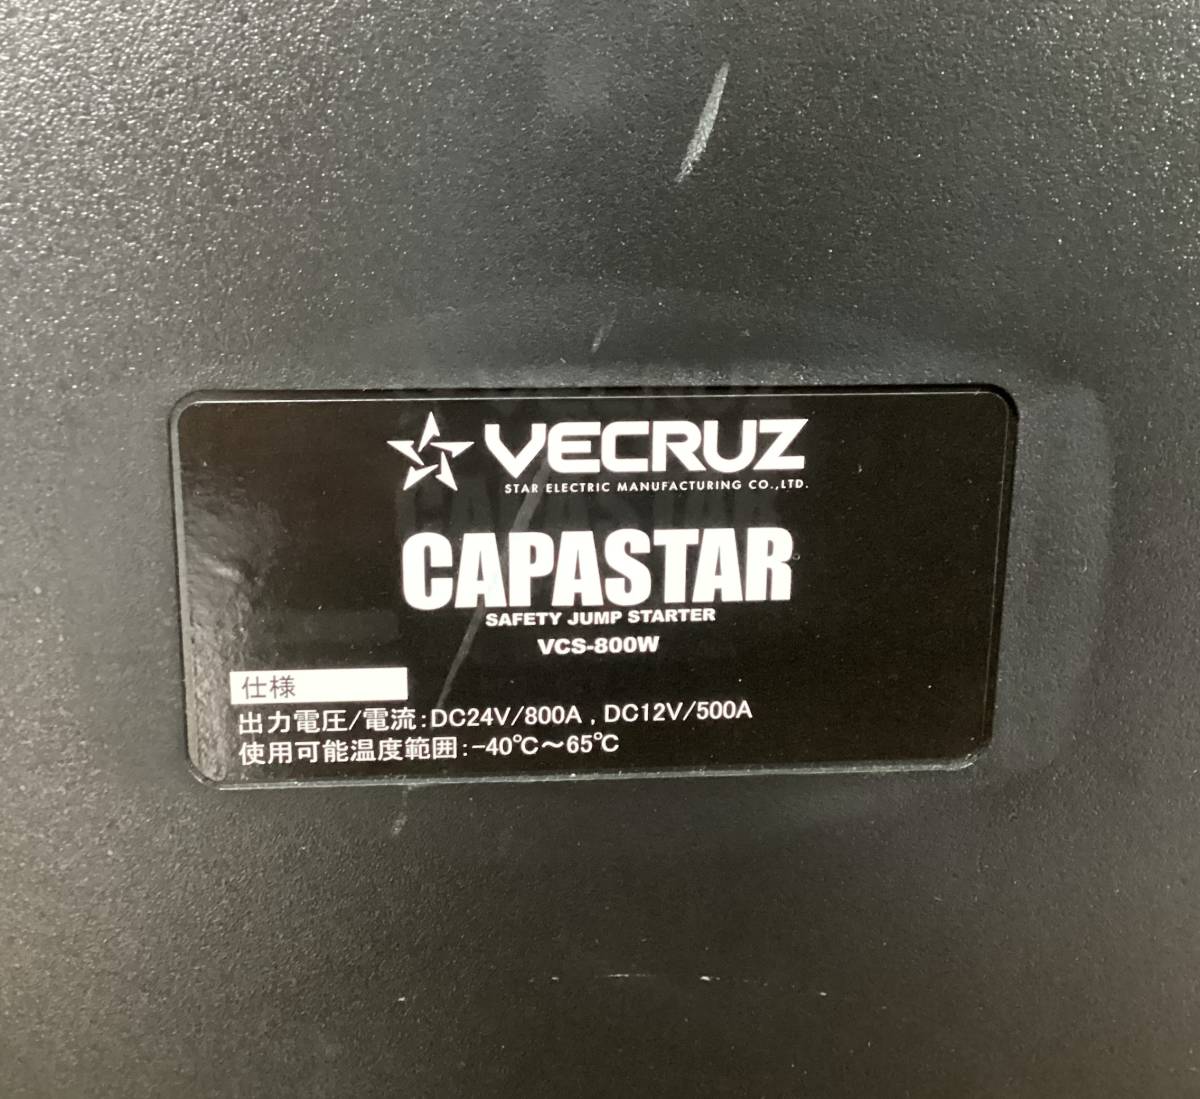 エンジンスターター ジャンプスターター バッテリー キャパスター VECRUZ CAPASTAR VCS-800W 美品の画像5